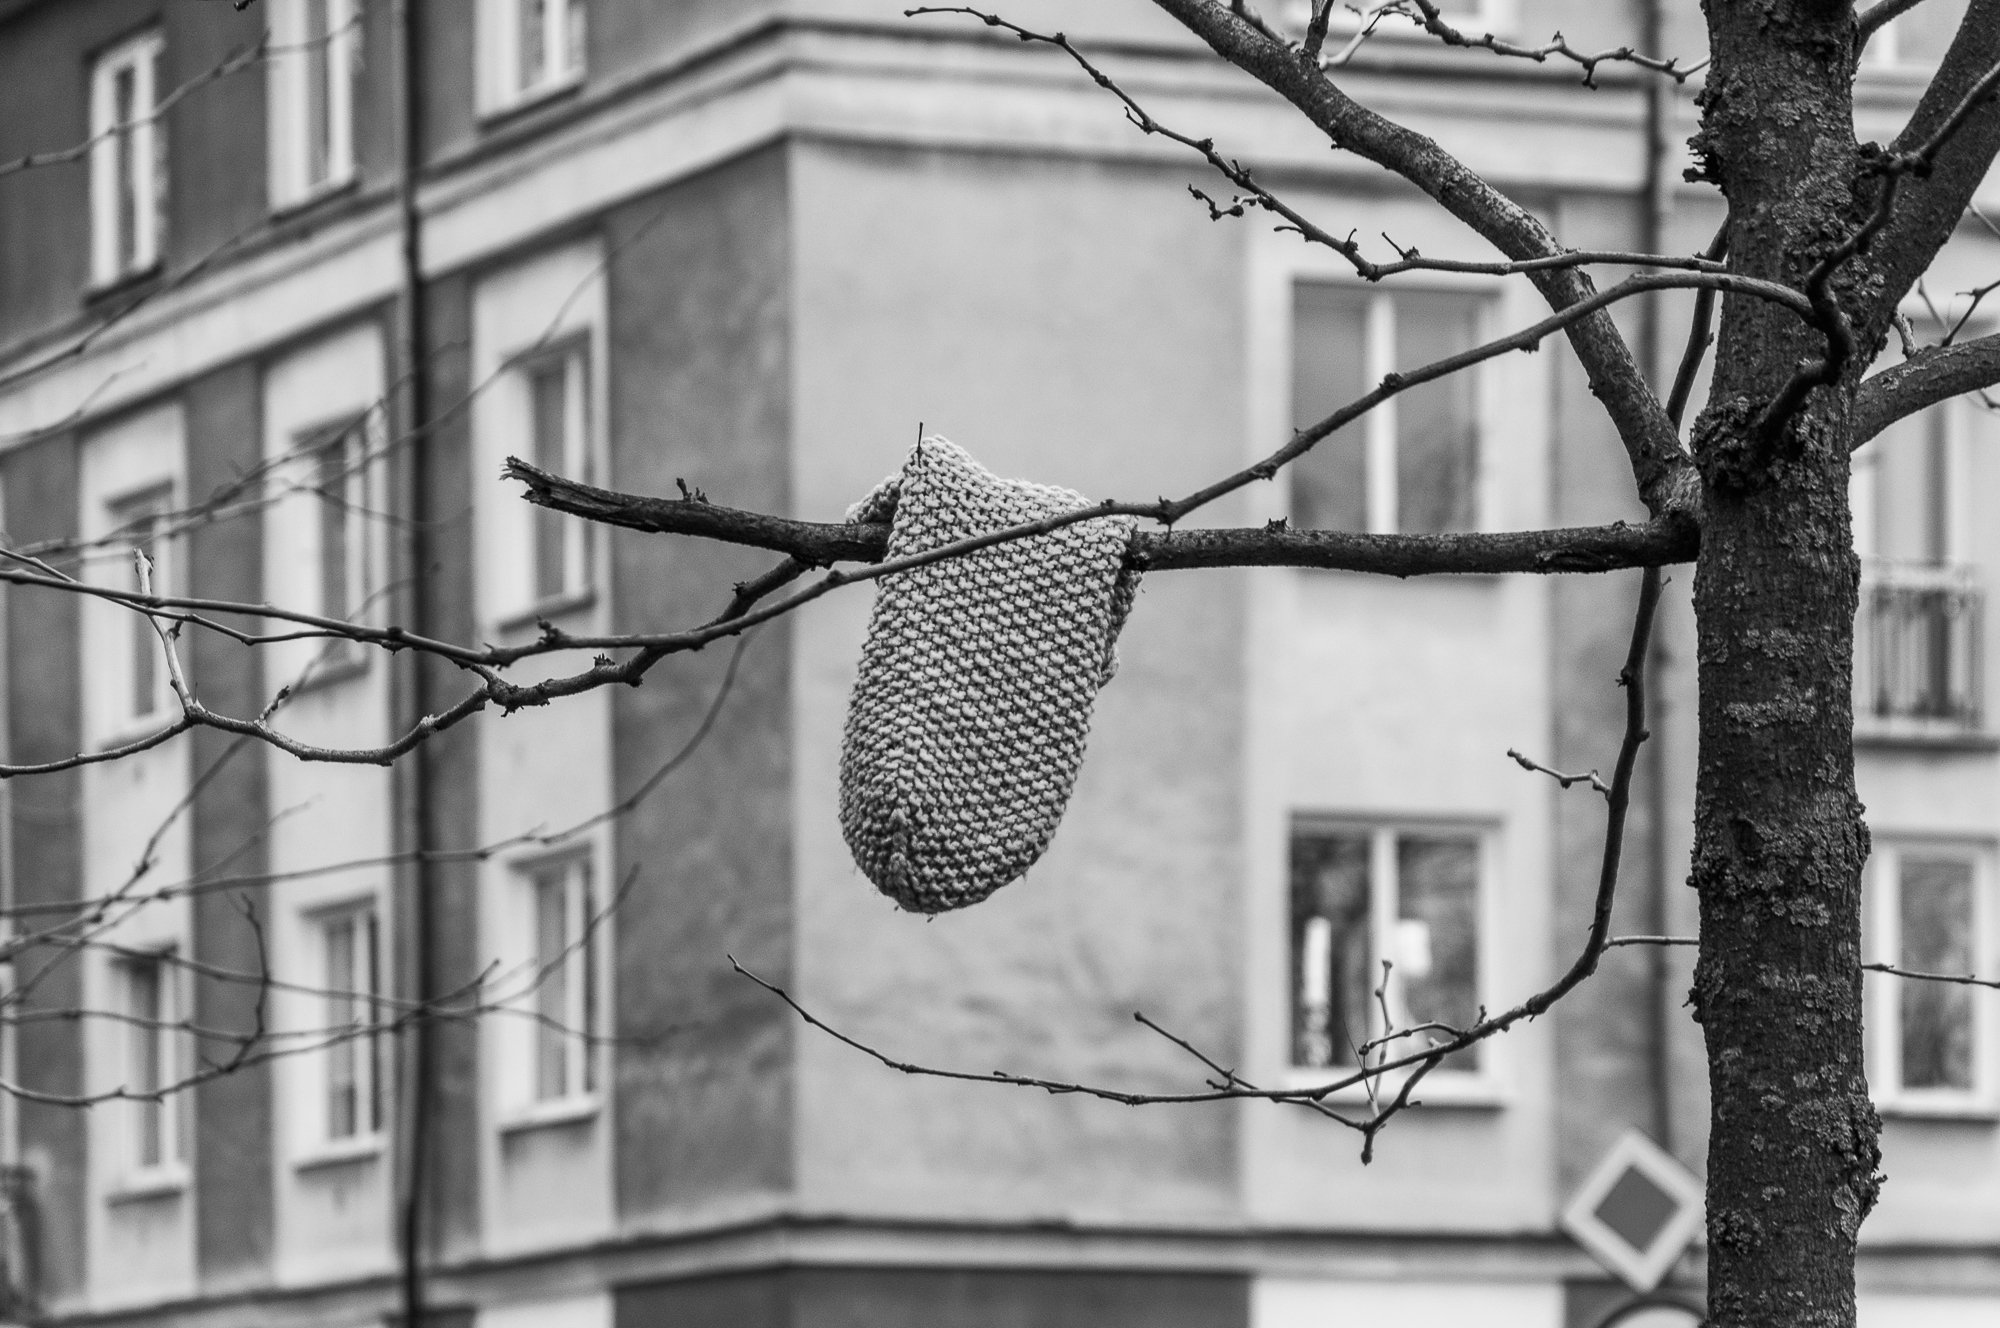 Adam Mazek Photography Warsaw (Warszawa) 2020. Post: "Space garbage." Minimalism. Gloves.